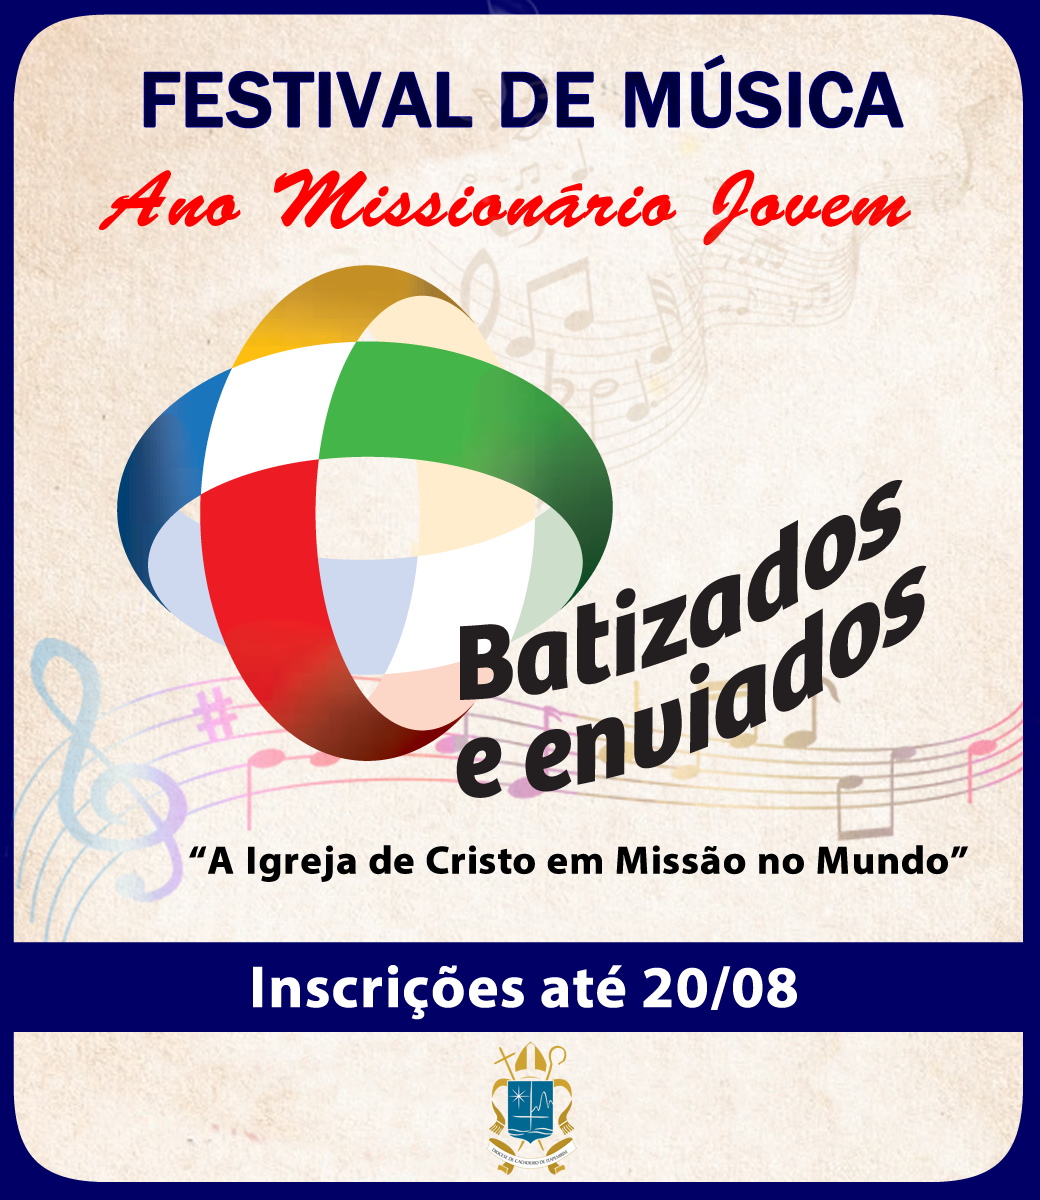 Festival de Música do Ano Missionário Jovem